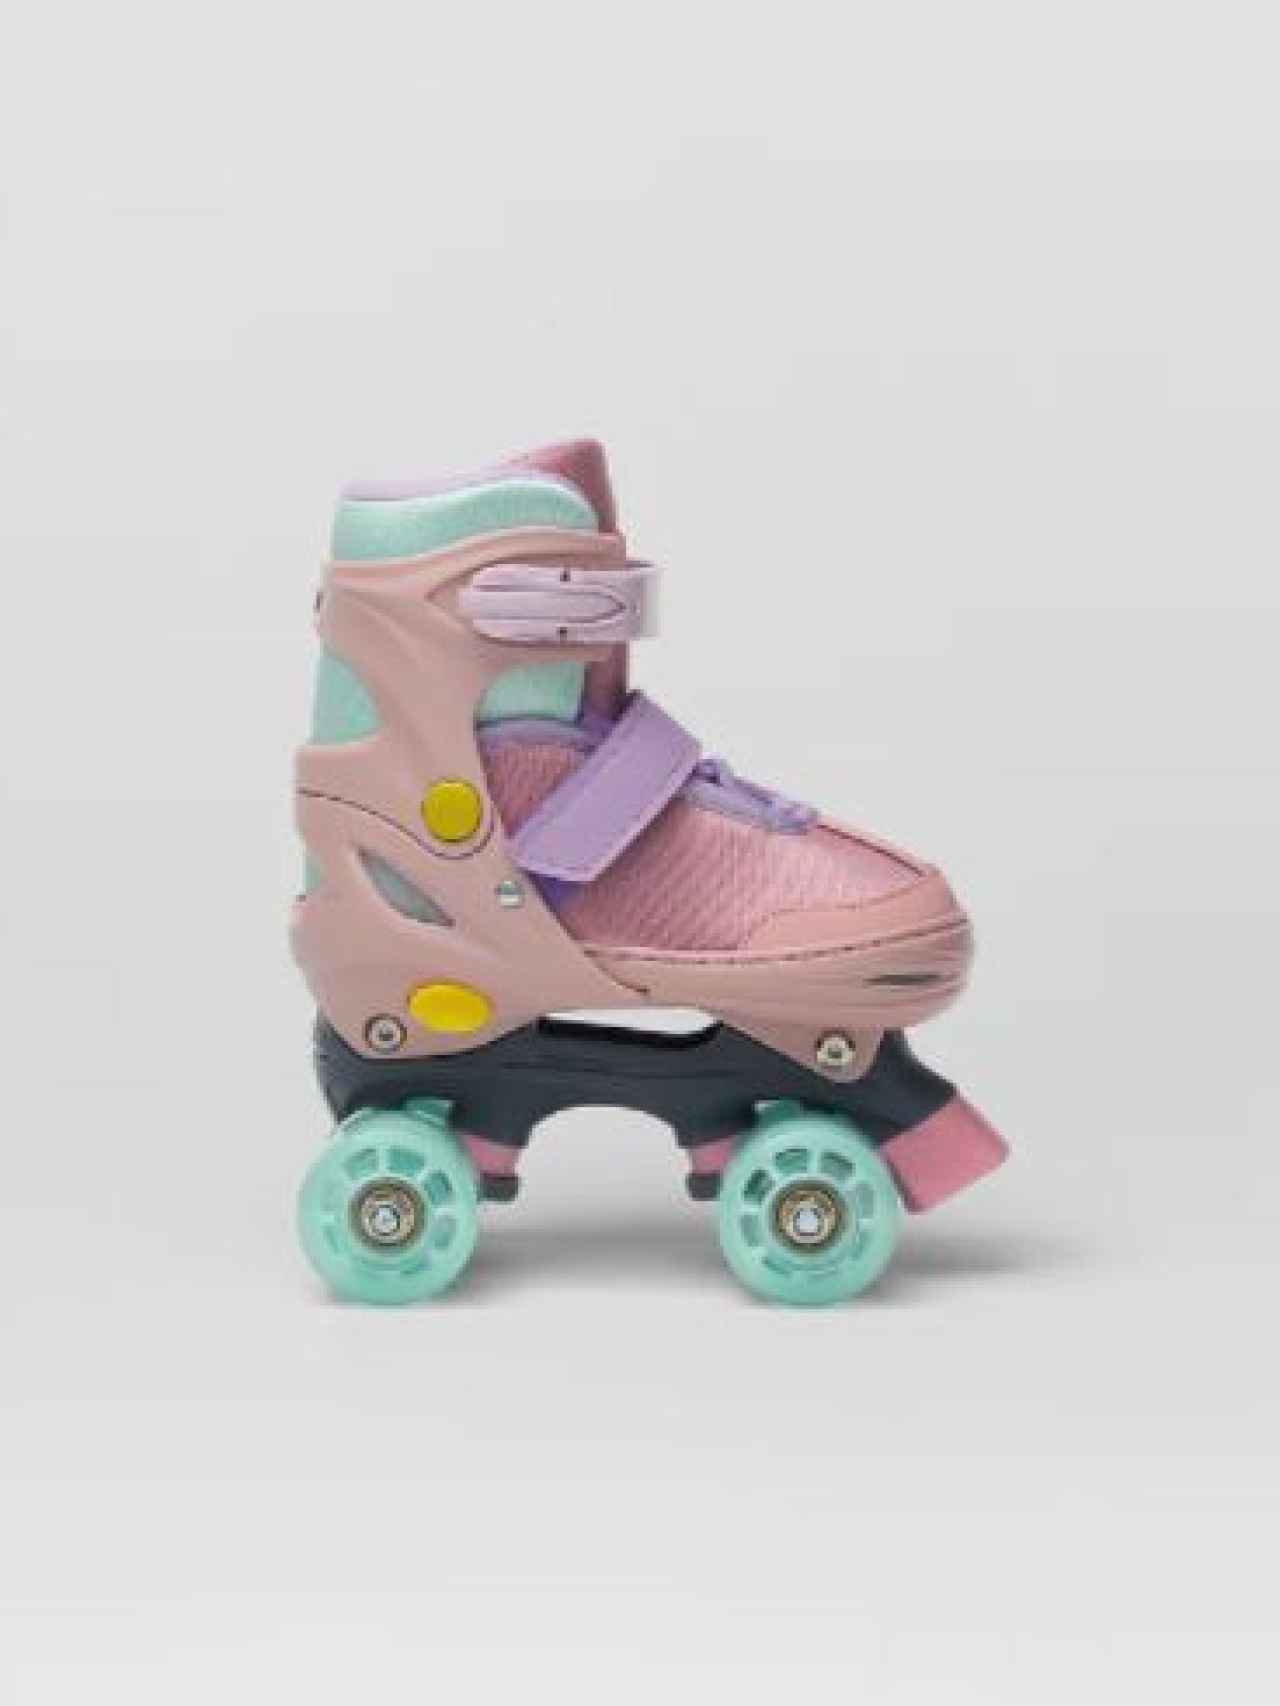 Zara ha apostado por unos patines con los colores en tendencia.